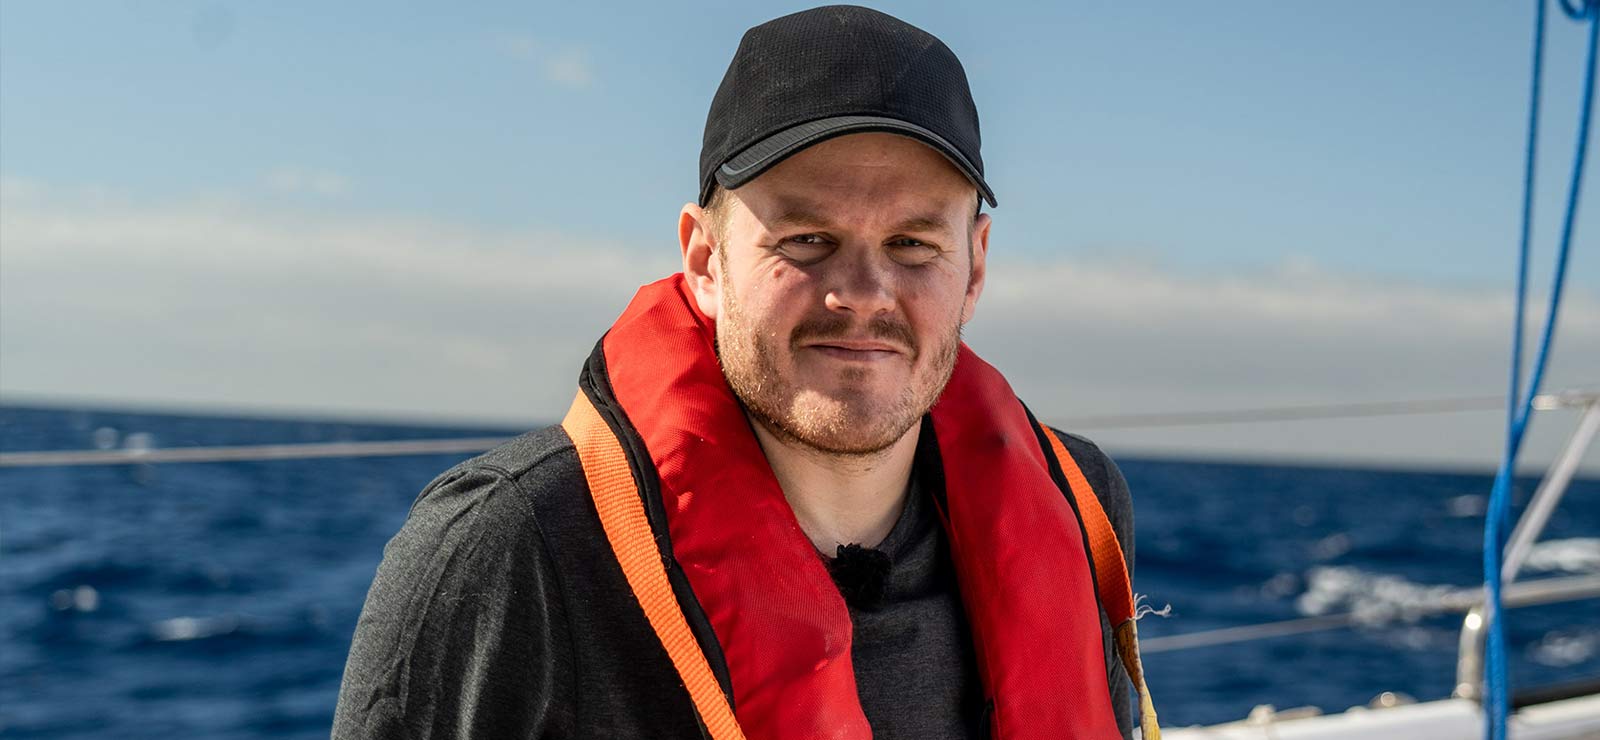 Klas Eriksson tittar fram igen efter tragedin: "Värmer i hjärtat"